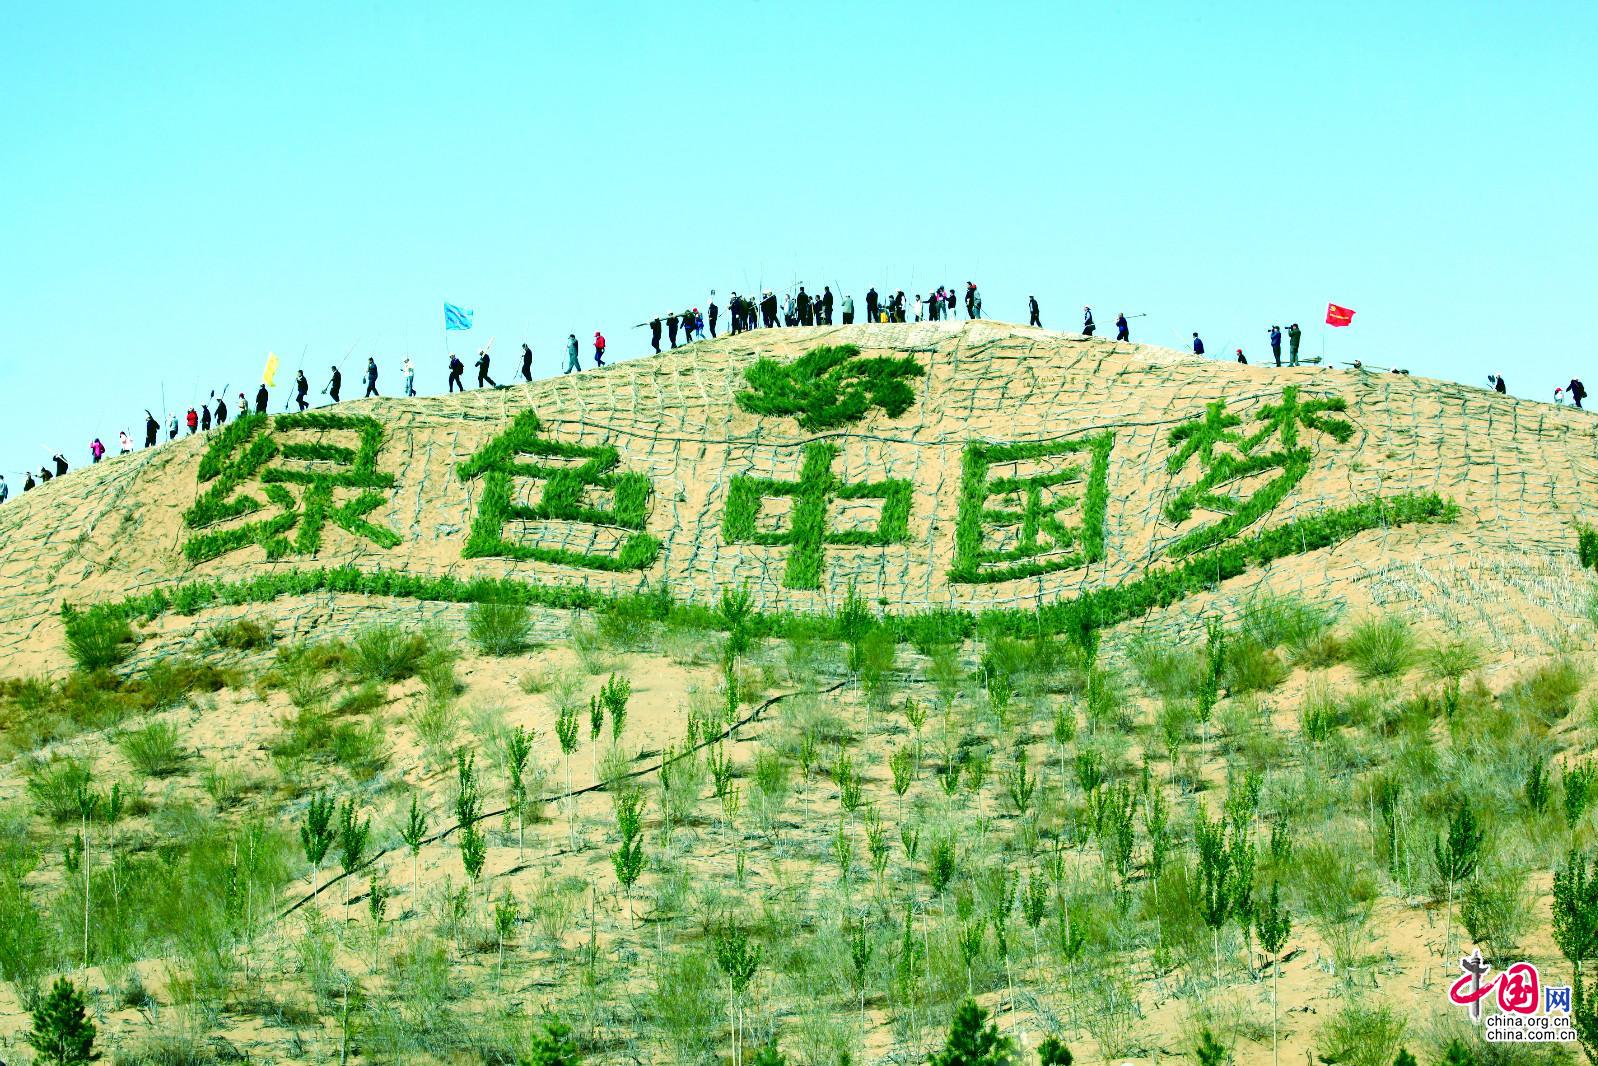 在库布其沙漠"沙峰绿谷"生态成果展示区,"绿色中国梦"的人工绿植景观